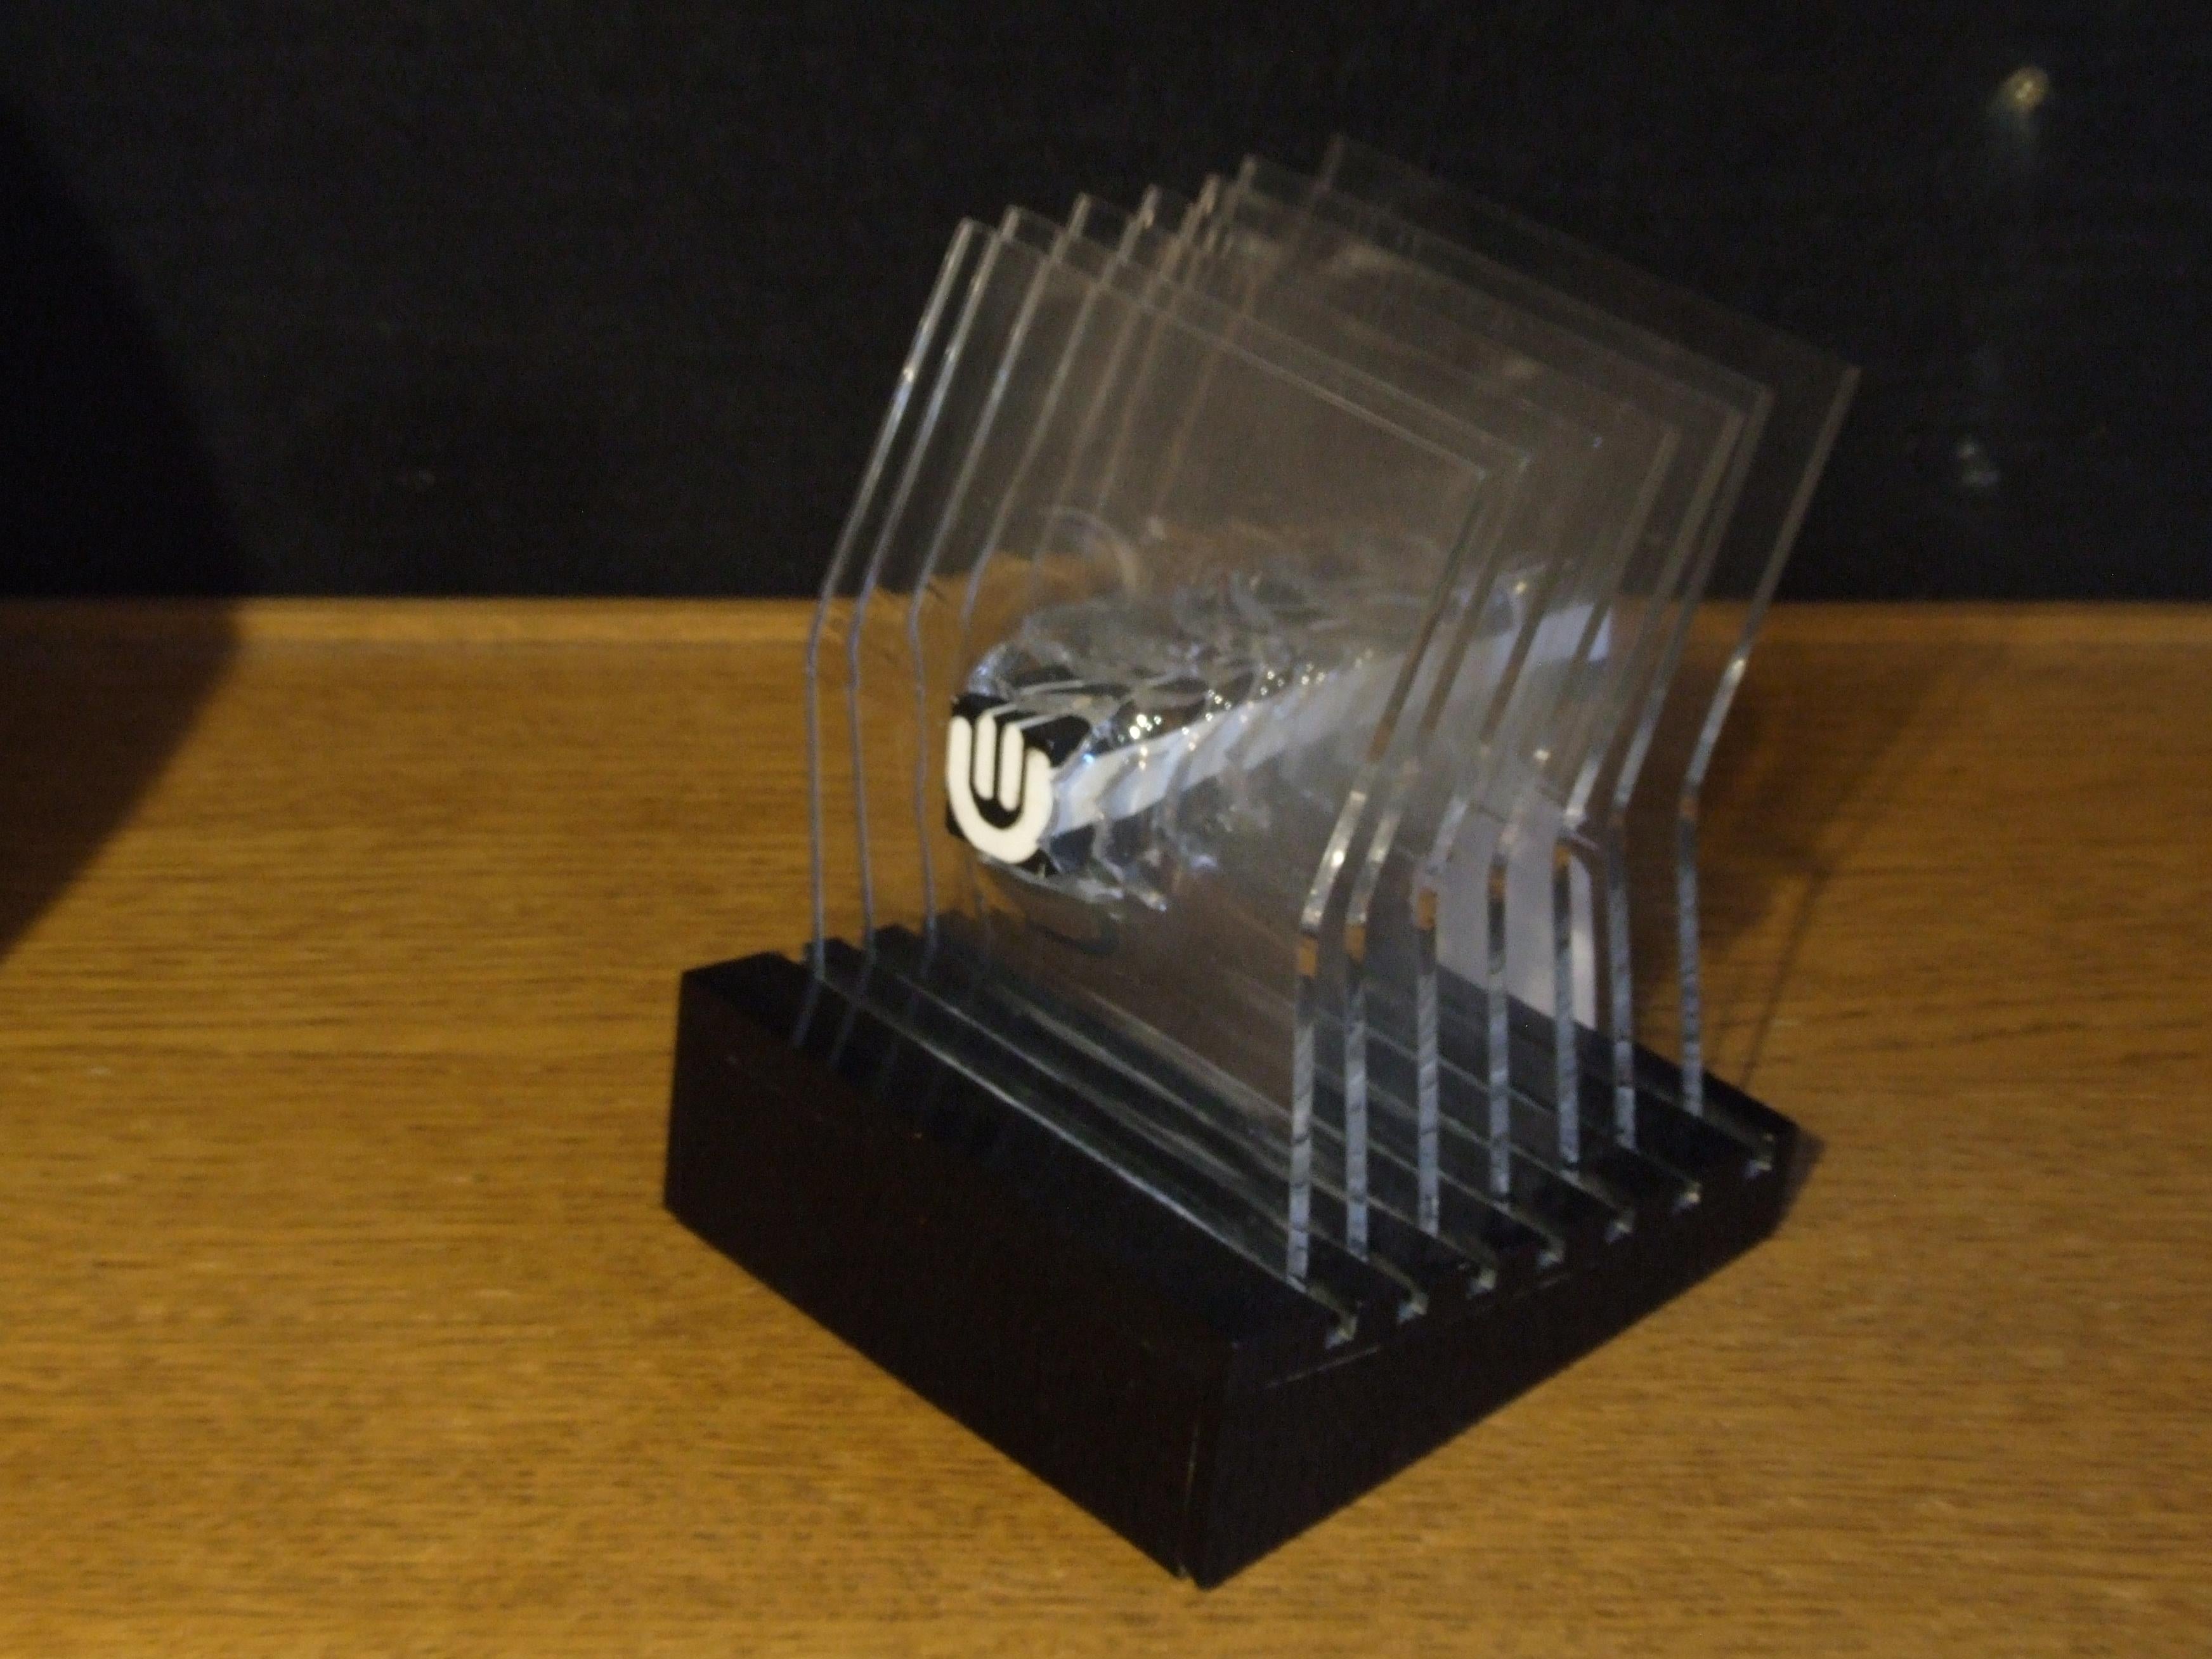 Edmond Vernassa Abstract Sculpture - Space concept, '90s - plexiglass, 14x16x14 cm.